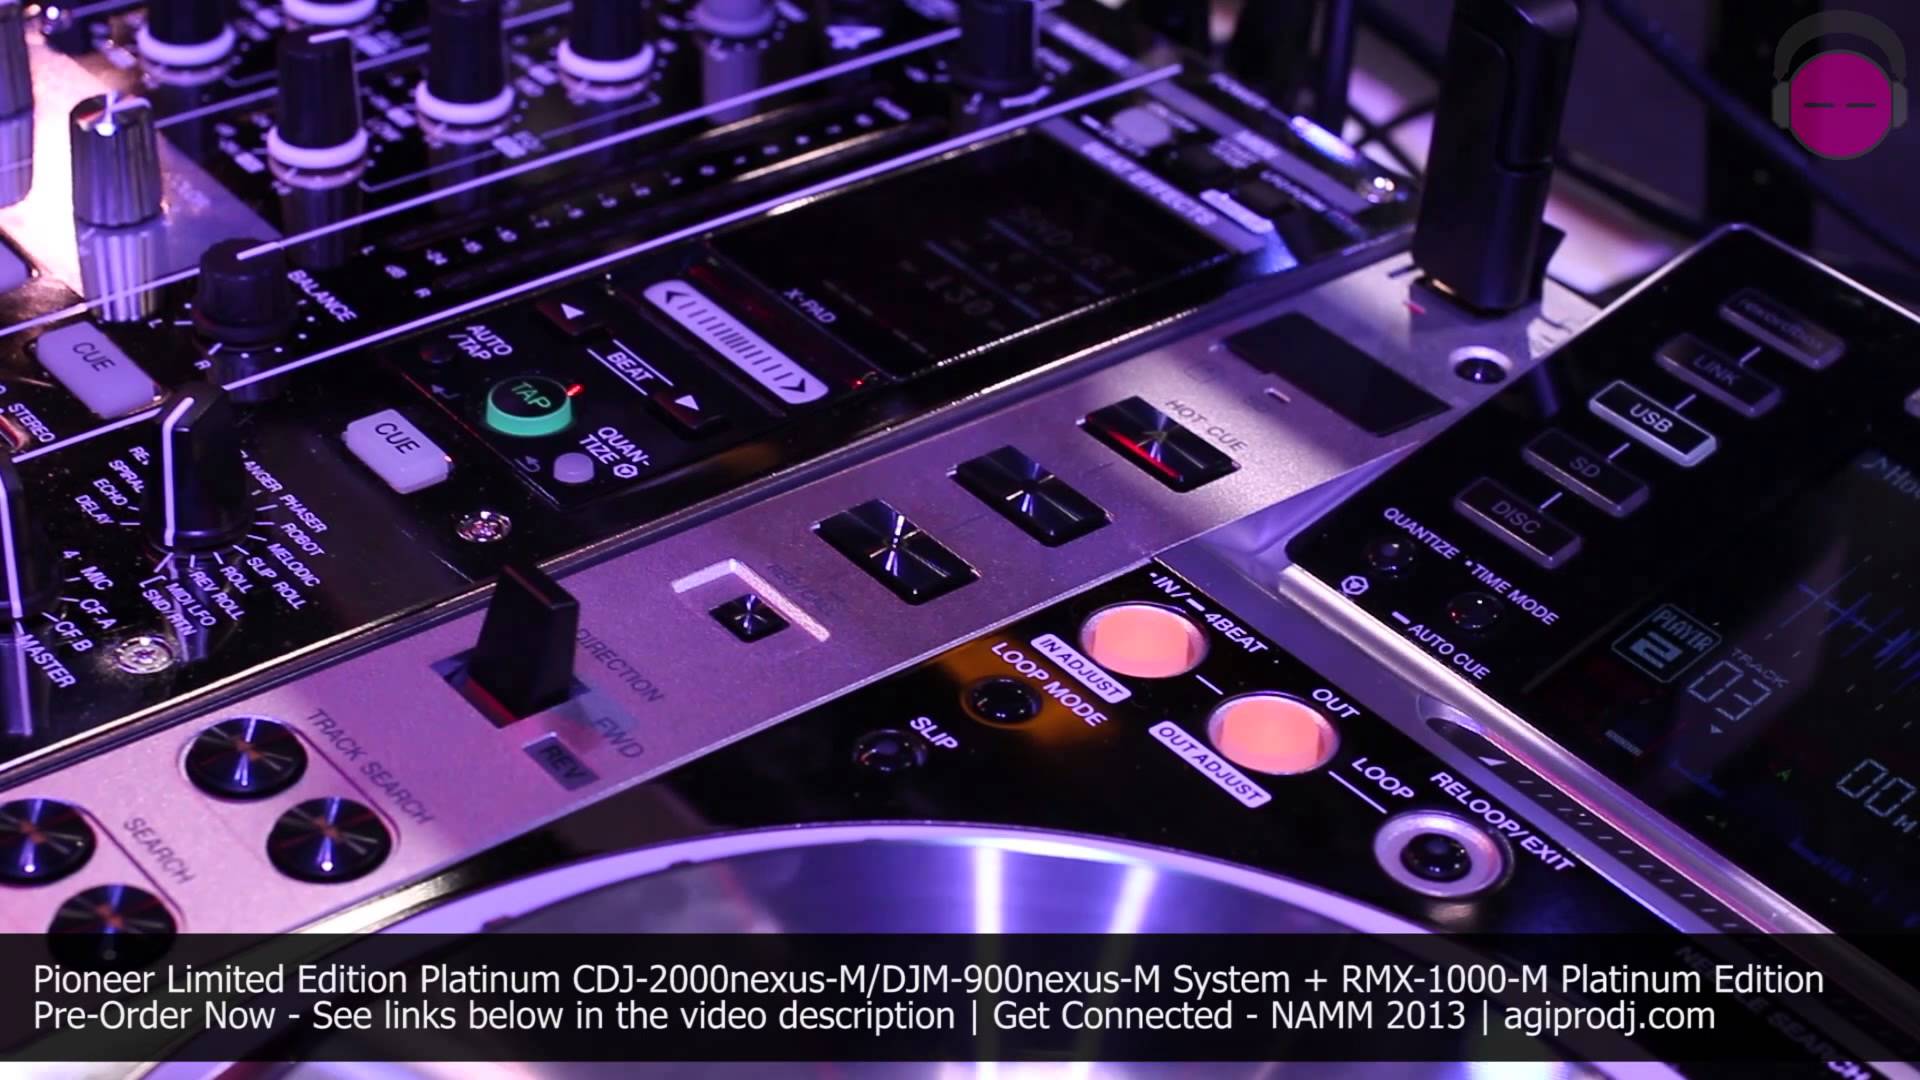 PIONEER CDJ 2000nexus M DJM 900nexus M Platinum Edition System